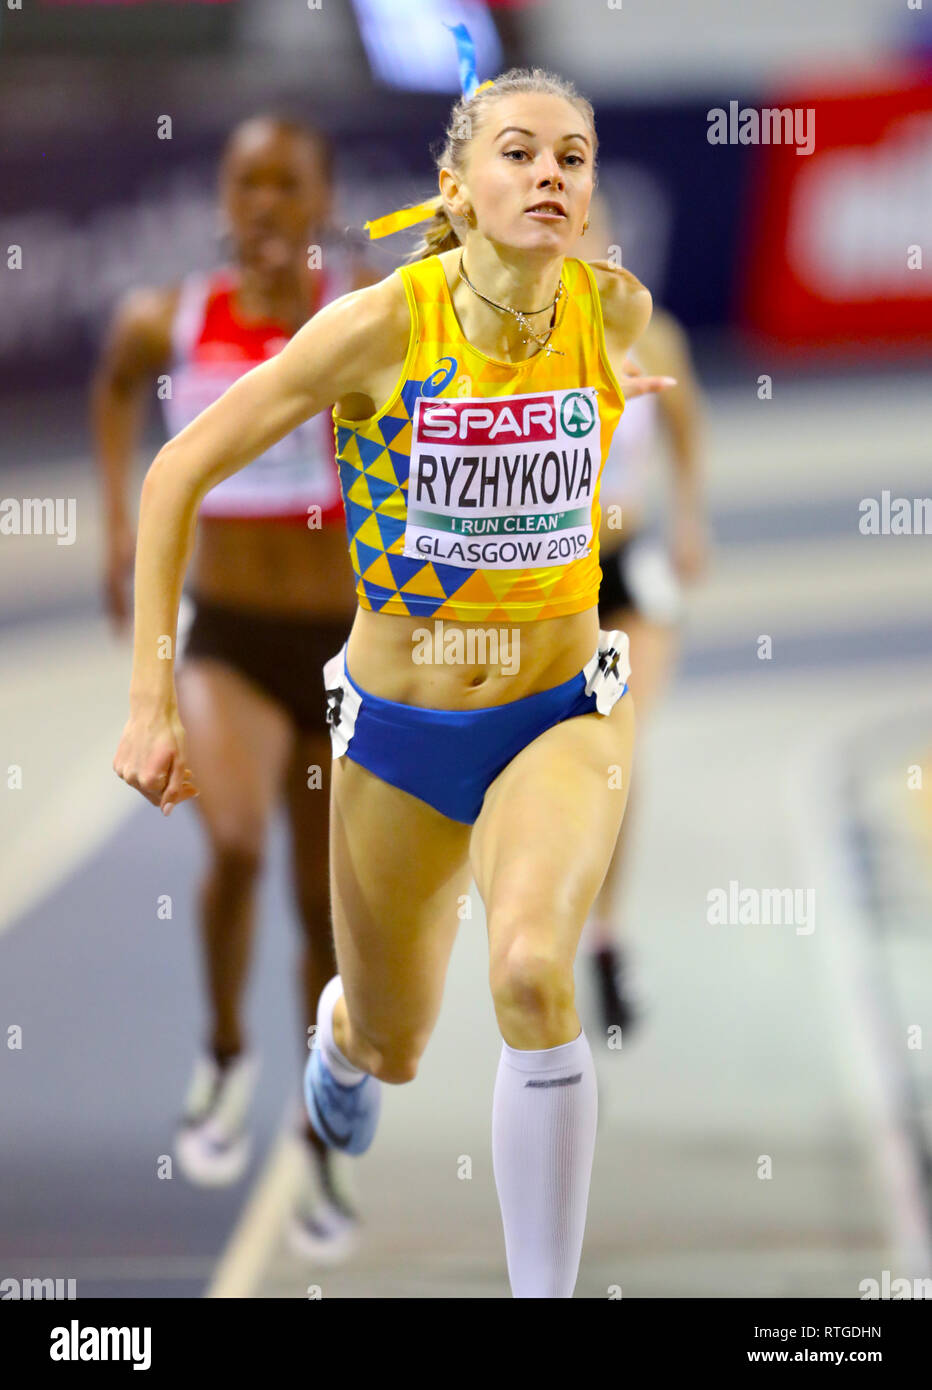 L'Ukraine Anna Ryzhykova rivalise Women's 400m 4 dans la chaleur au cours de la première journée de l'Indoor d'athlétisme à l'Emirates Arena, Glasgow. Banque D'Images